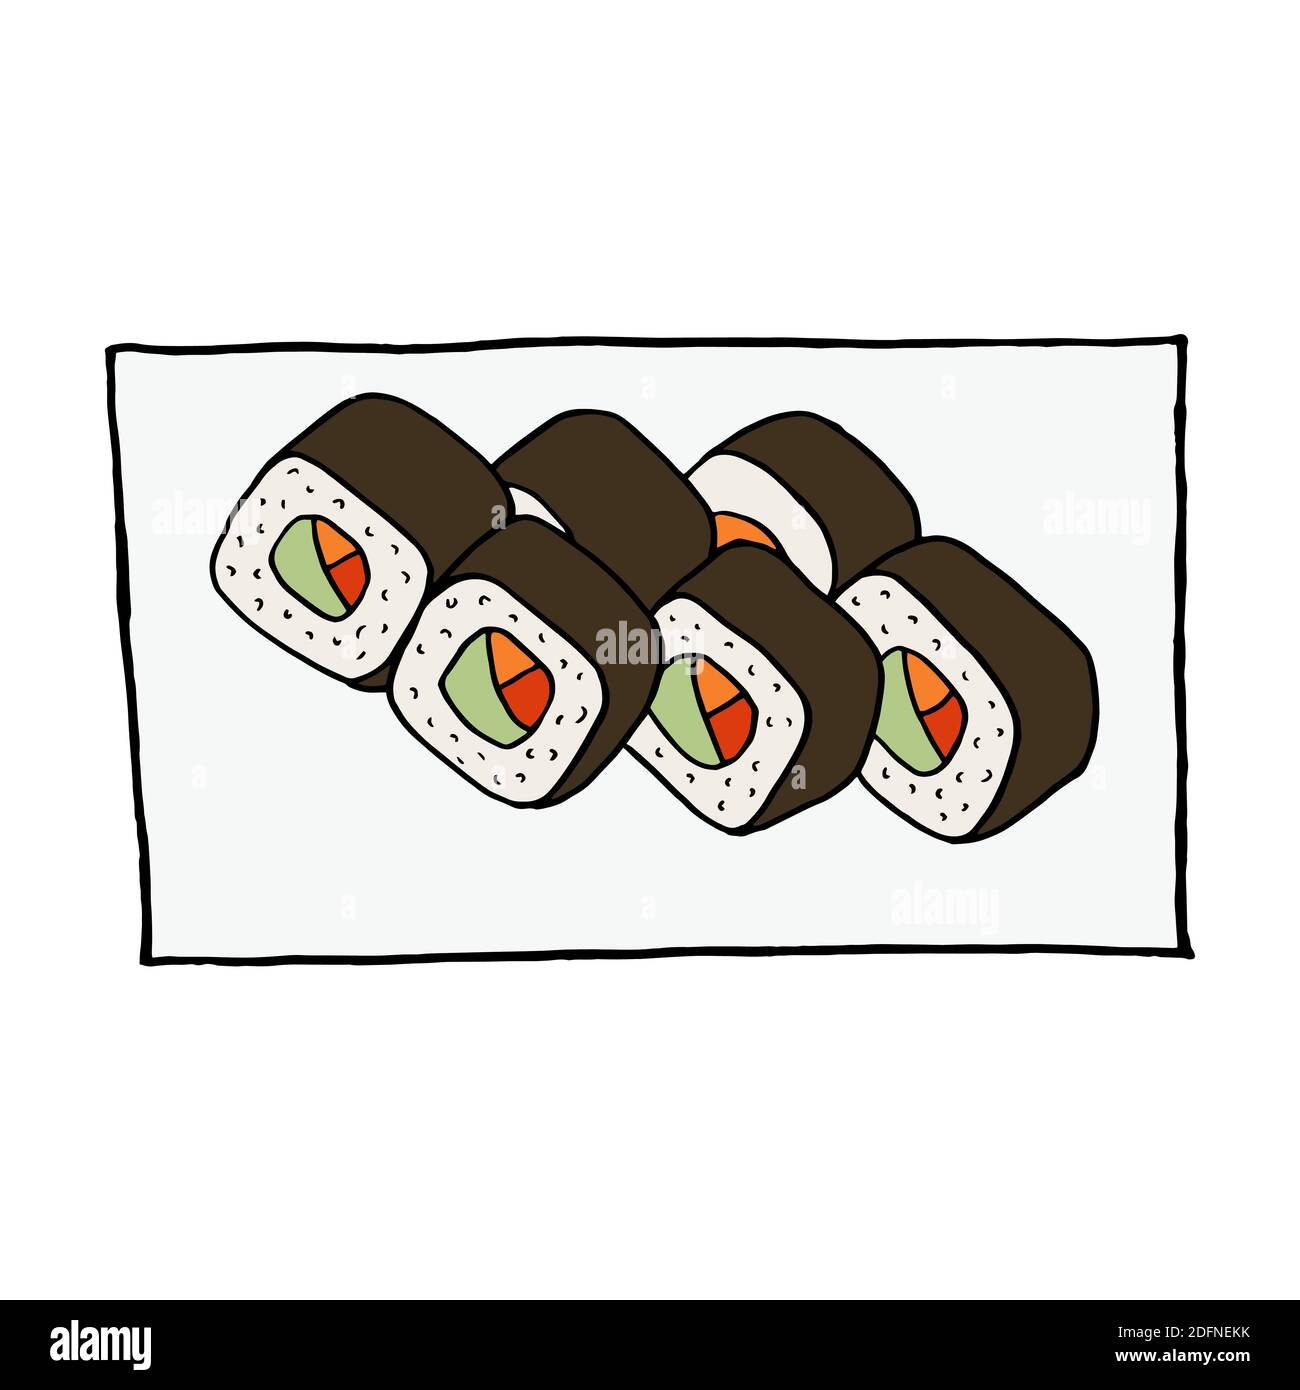 Rouleau de sushi à l'assiette à l'anses dessinées à la main. Plat de cuisine japonaise. Design sketch élément pour menu café, restaurant, étiquette et emballage. Colorfu Illustration de Vecteur